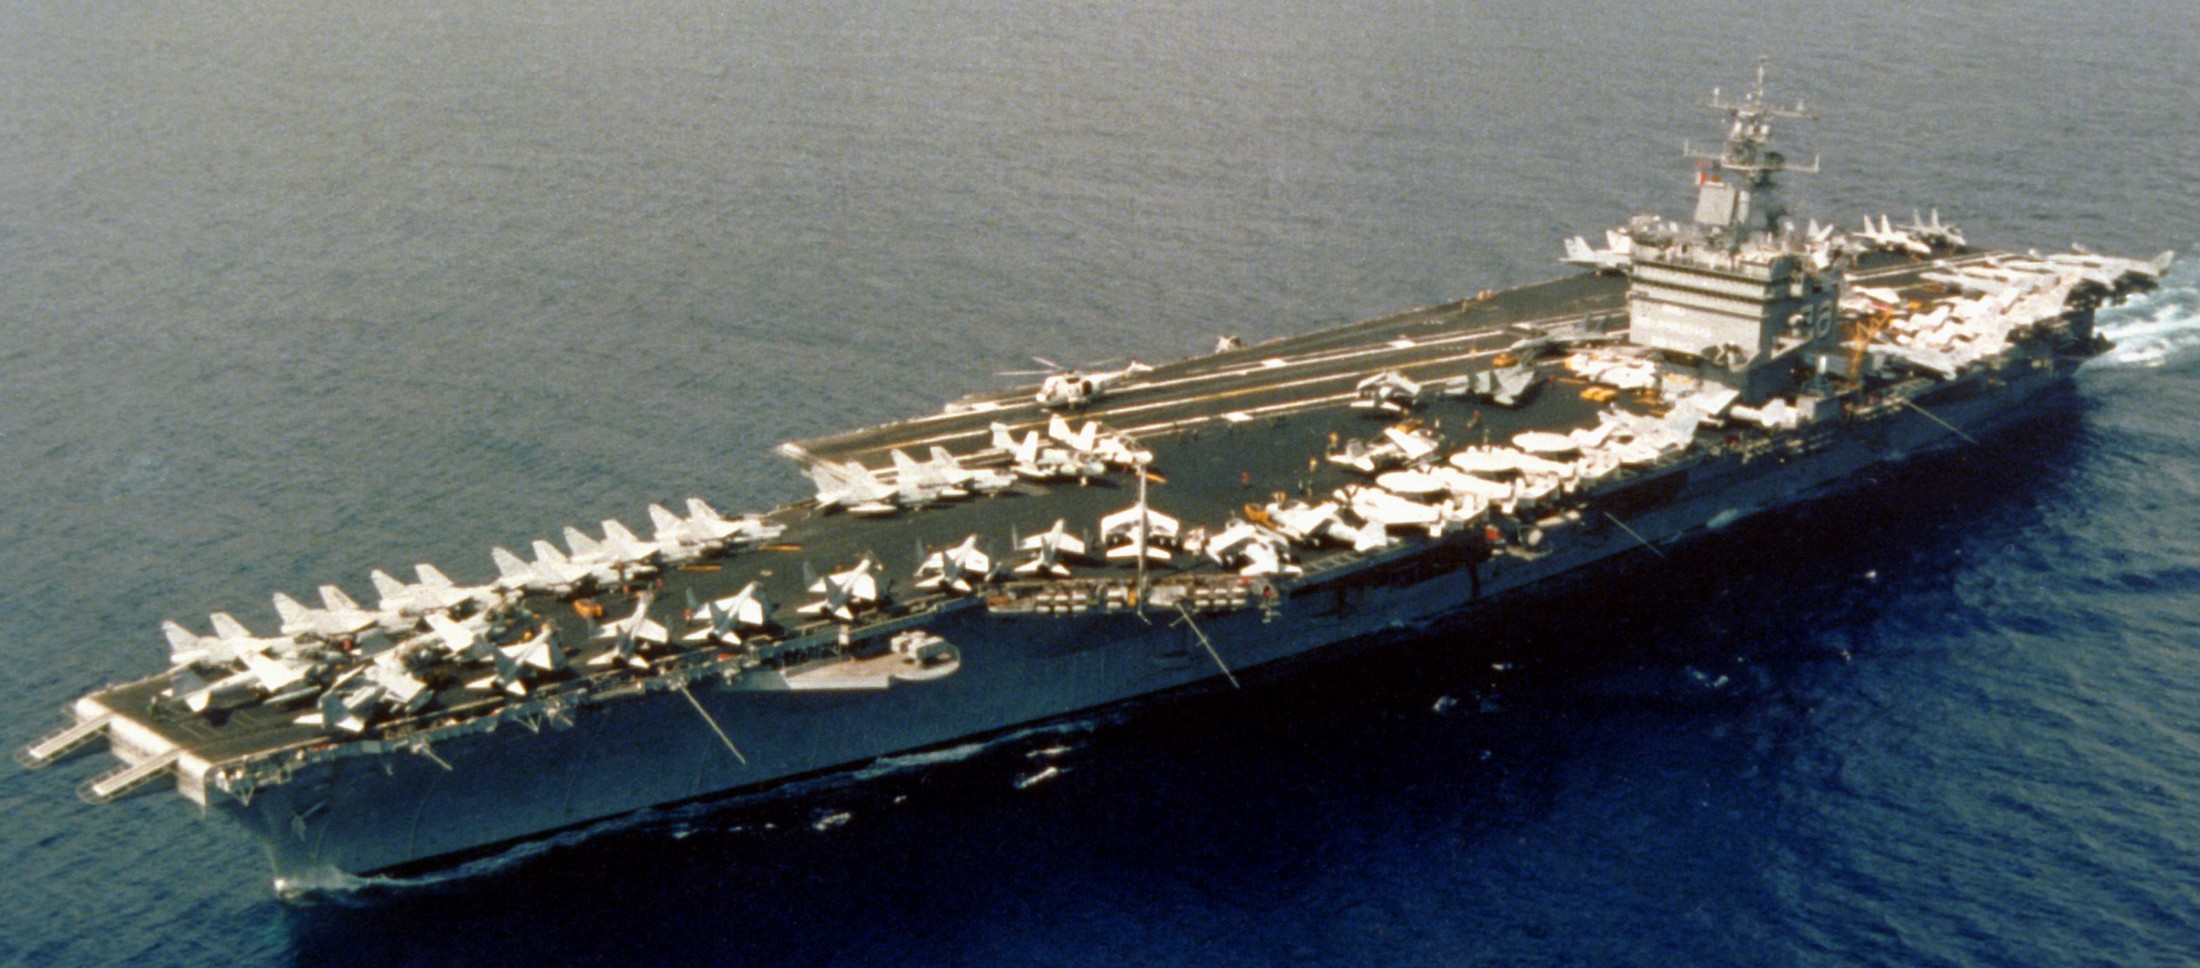 cvn-65 uss enterprise aircraft carrier air wing cvw-11 us navy 1986 191